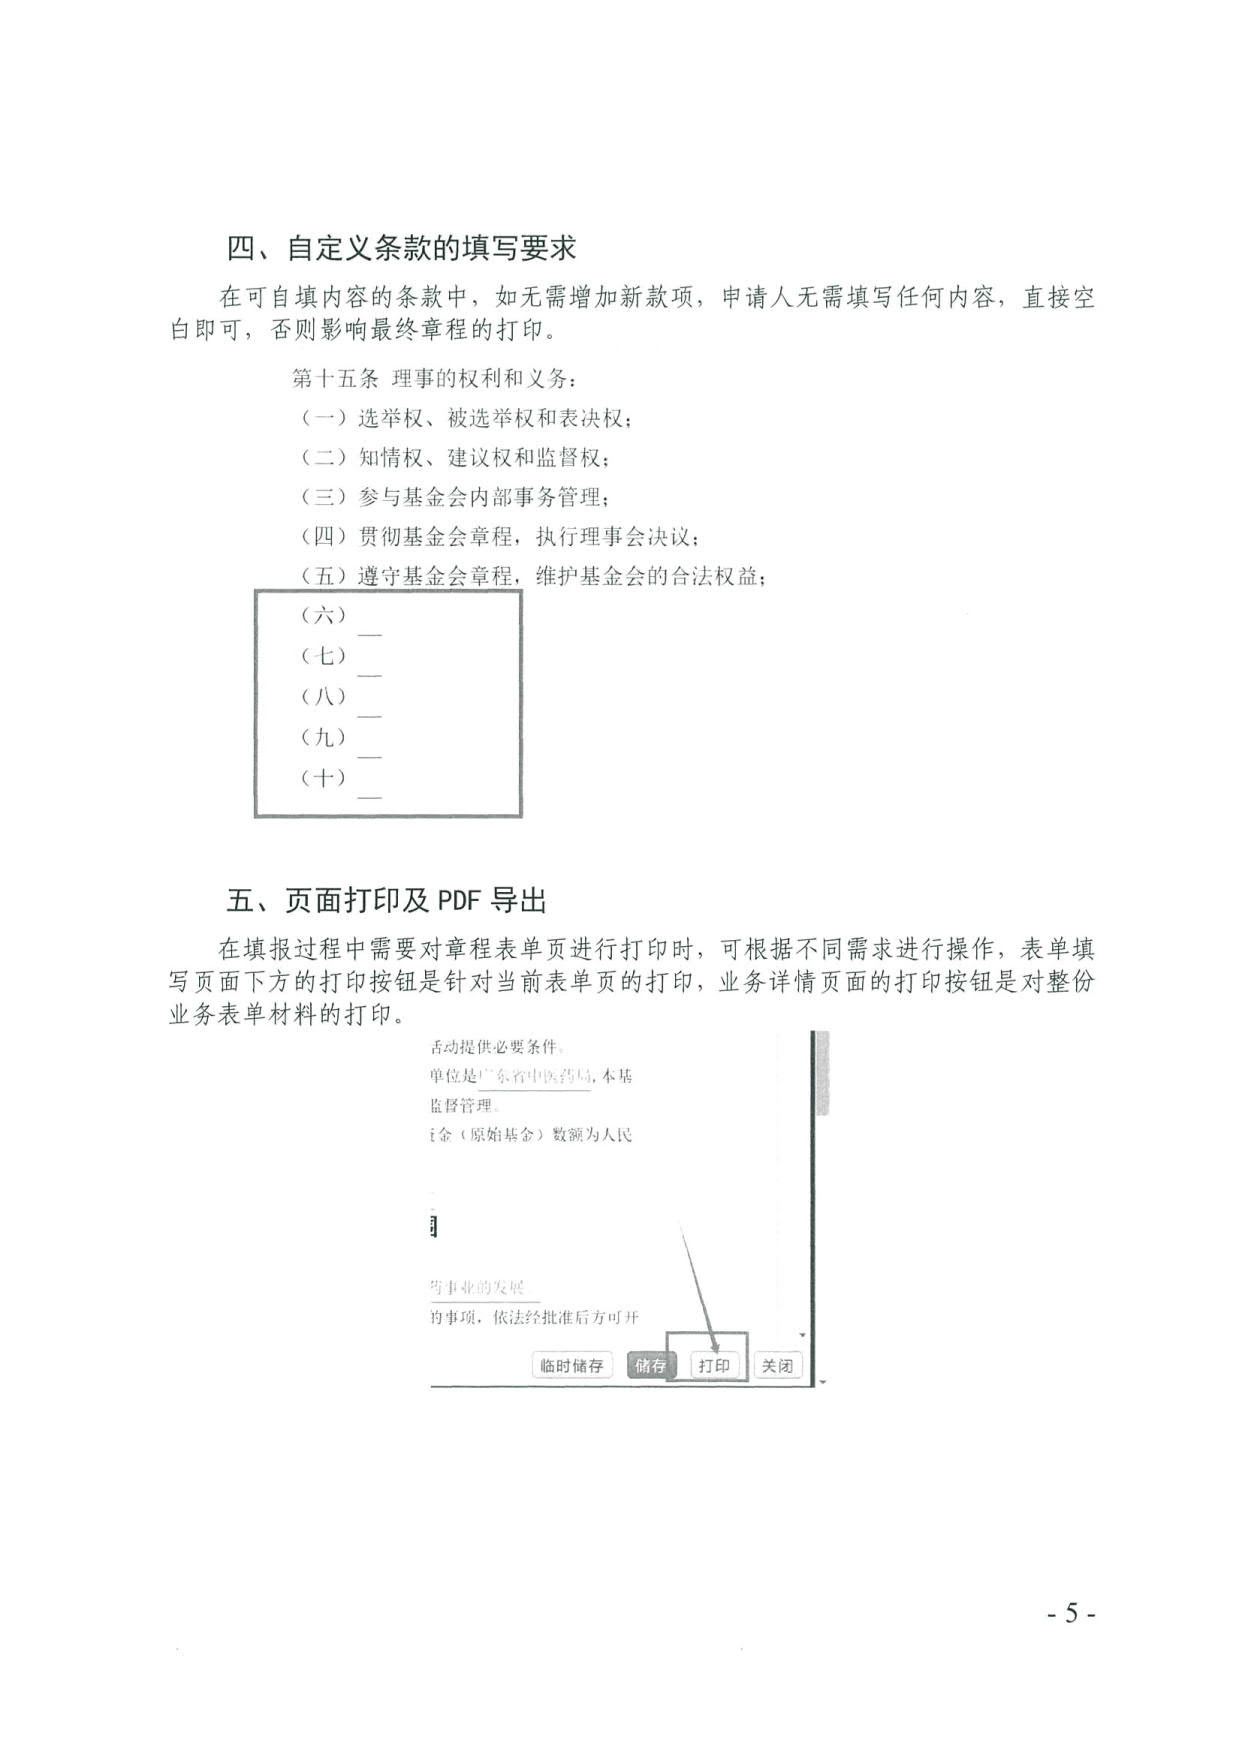 广东省社会组织管理局关于更新基金会章程核准等申报流程的通知(2)_5.jpg